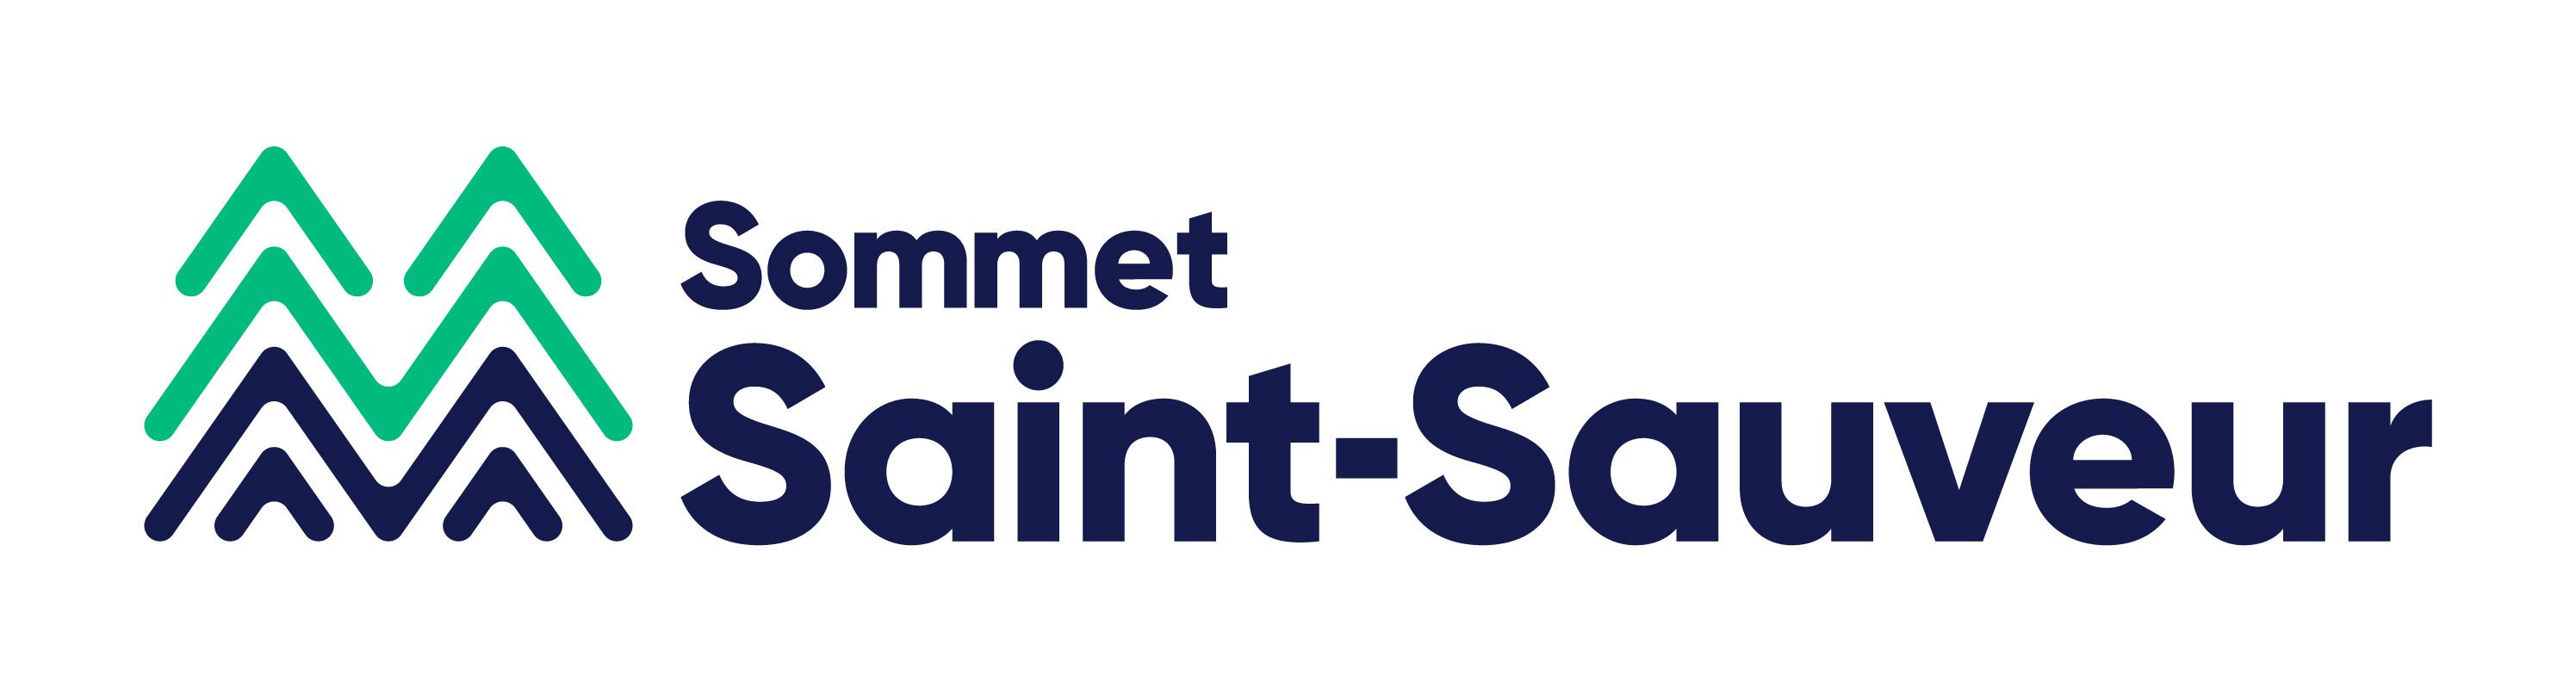 Sommet Saint-Sauveur logo